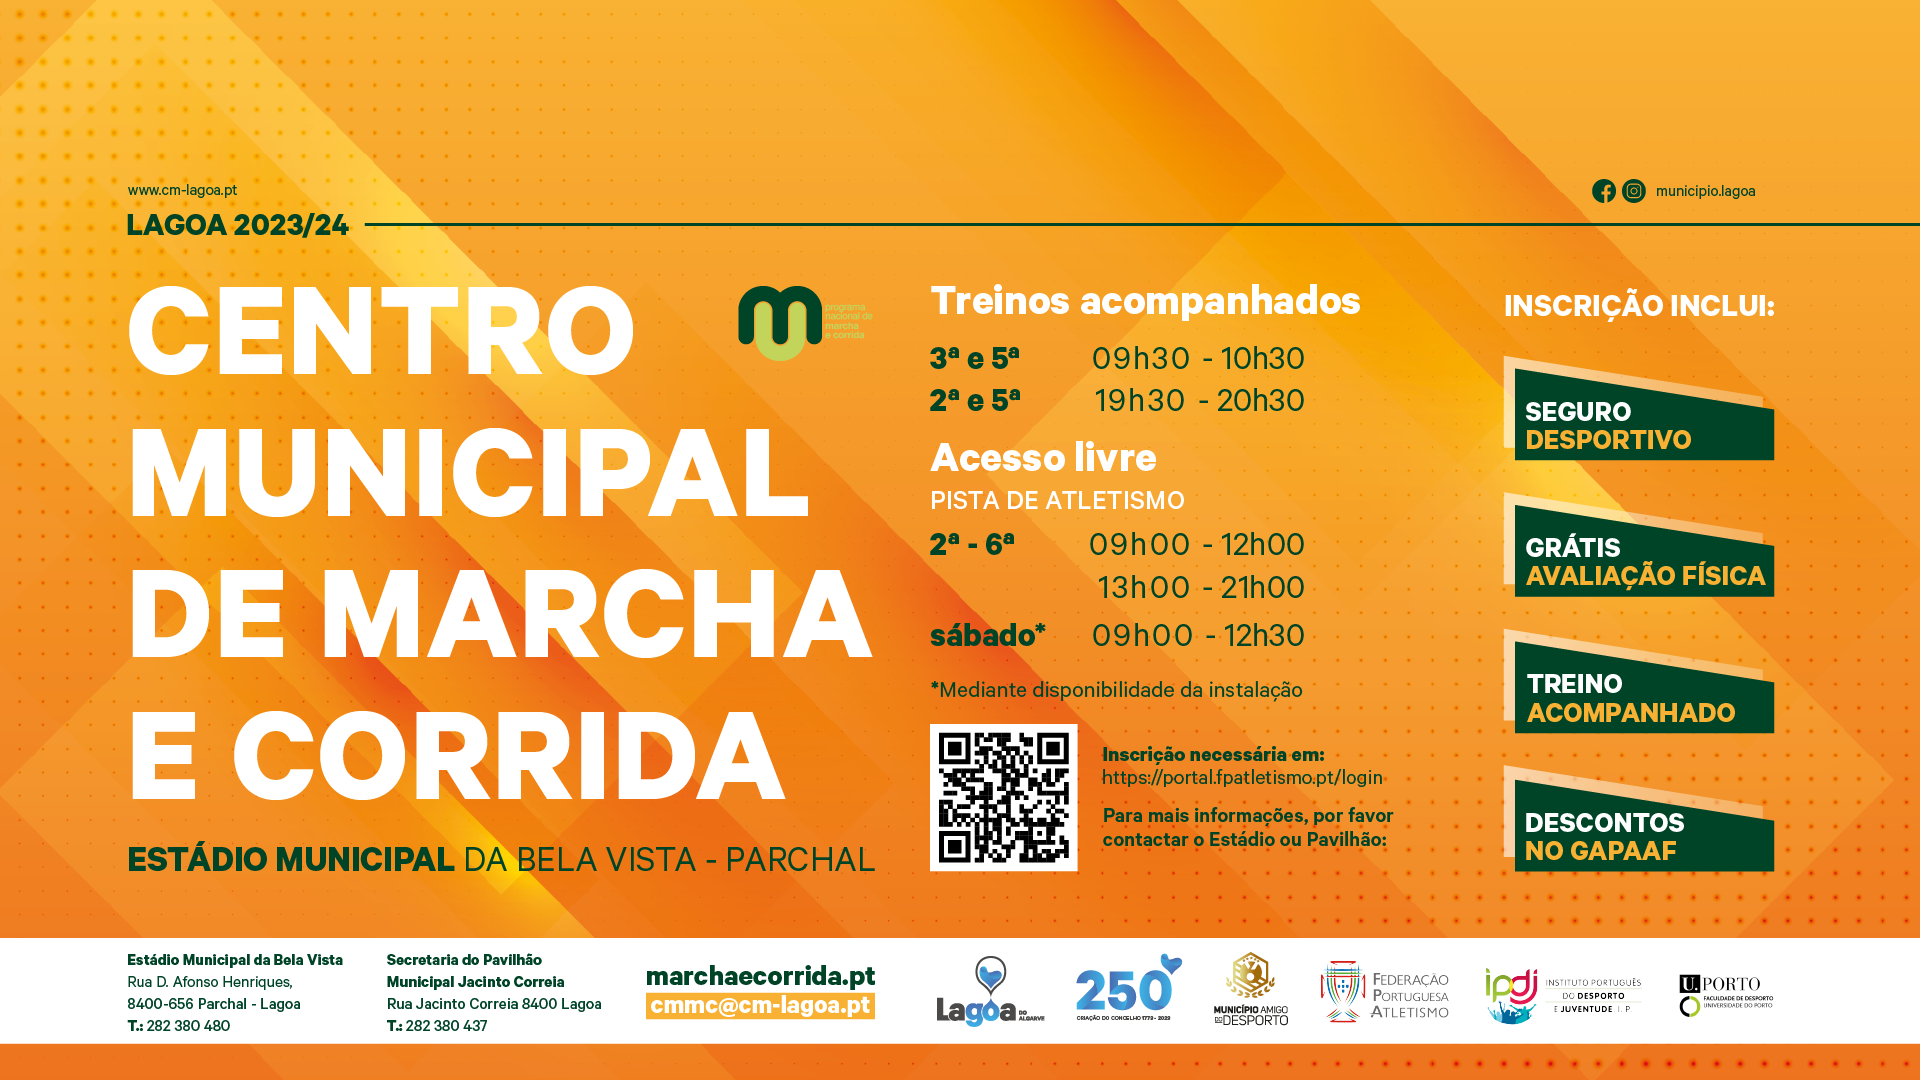 Centro Municipal de Marcha e Corrida Lagoa 2023/2024